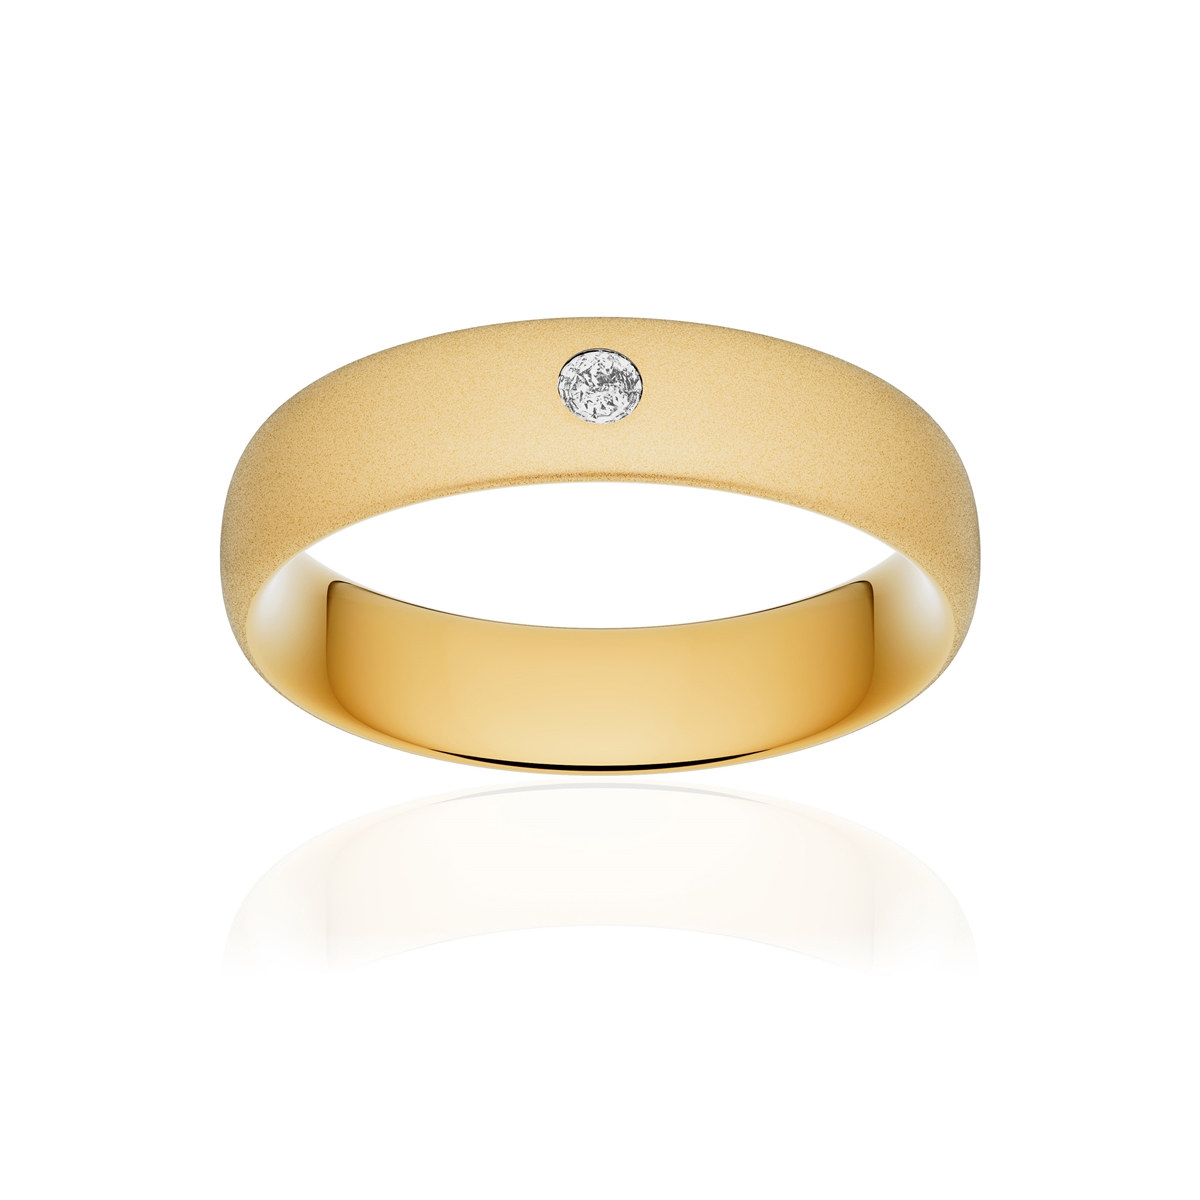 Alliance or 750 jaune sablé ruban confort 5,5mm diamant brillant